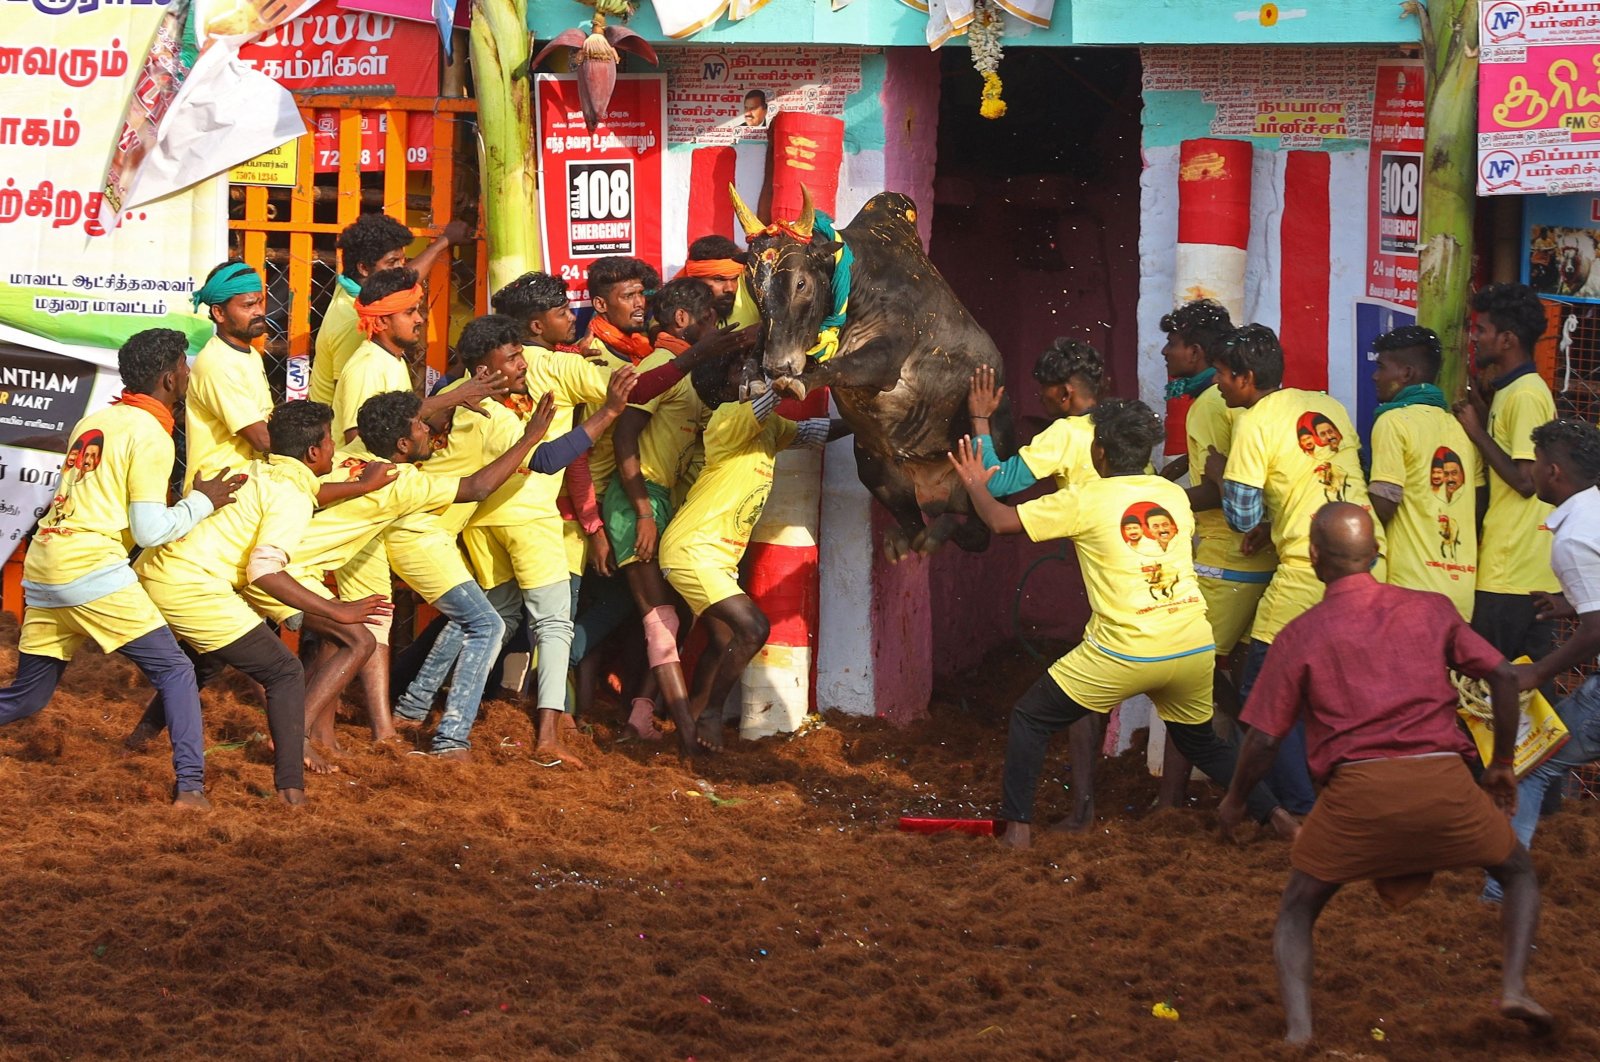 1 tewas, belasan lainnya luka-luka dalam kontes penjinakan banteng di India